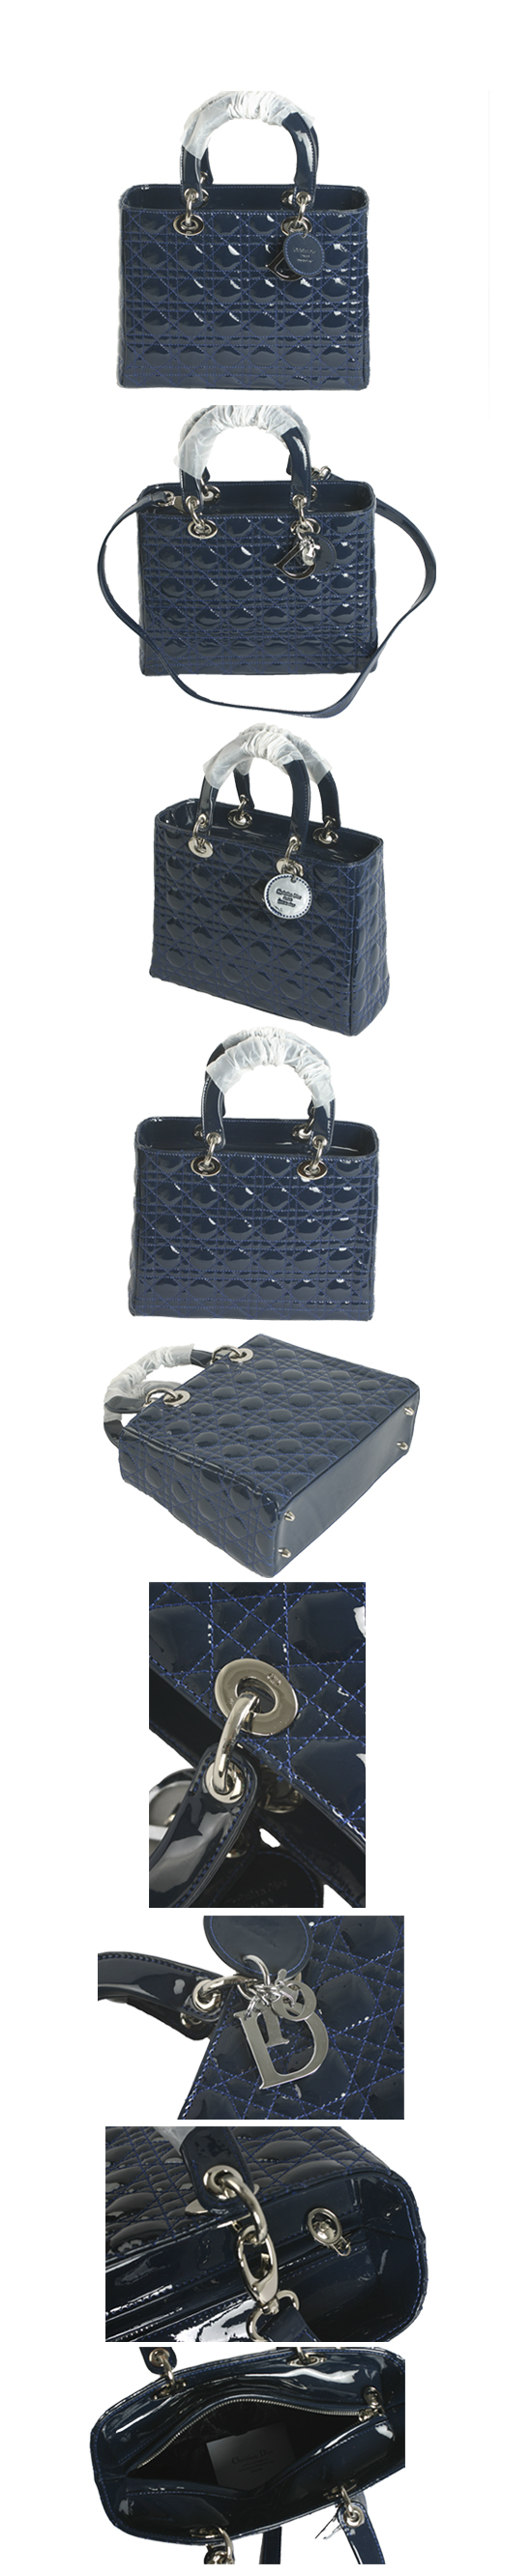 ブランド通販Dior-ディオール-9928-blue激安屋-ブランドコピー